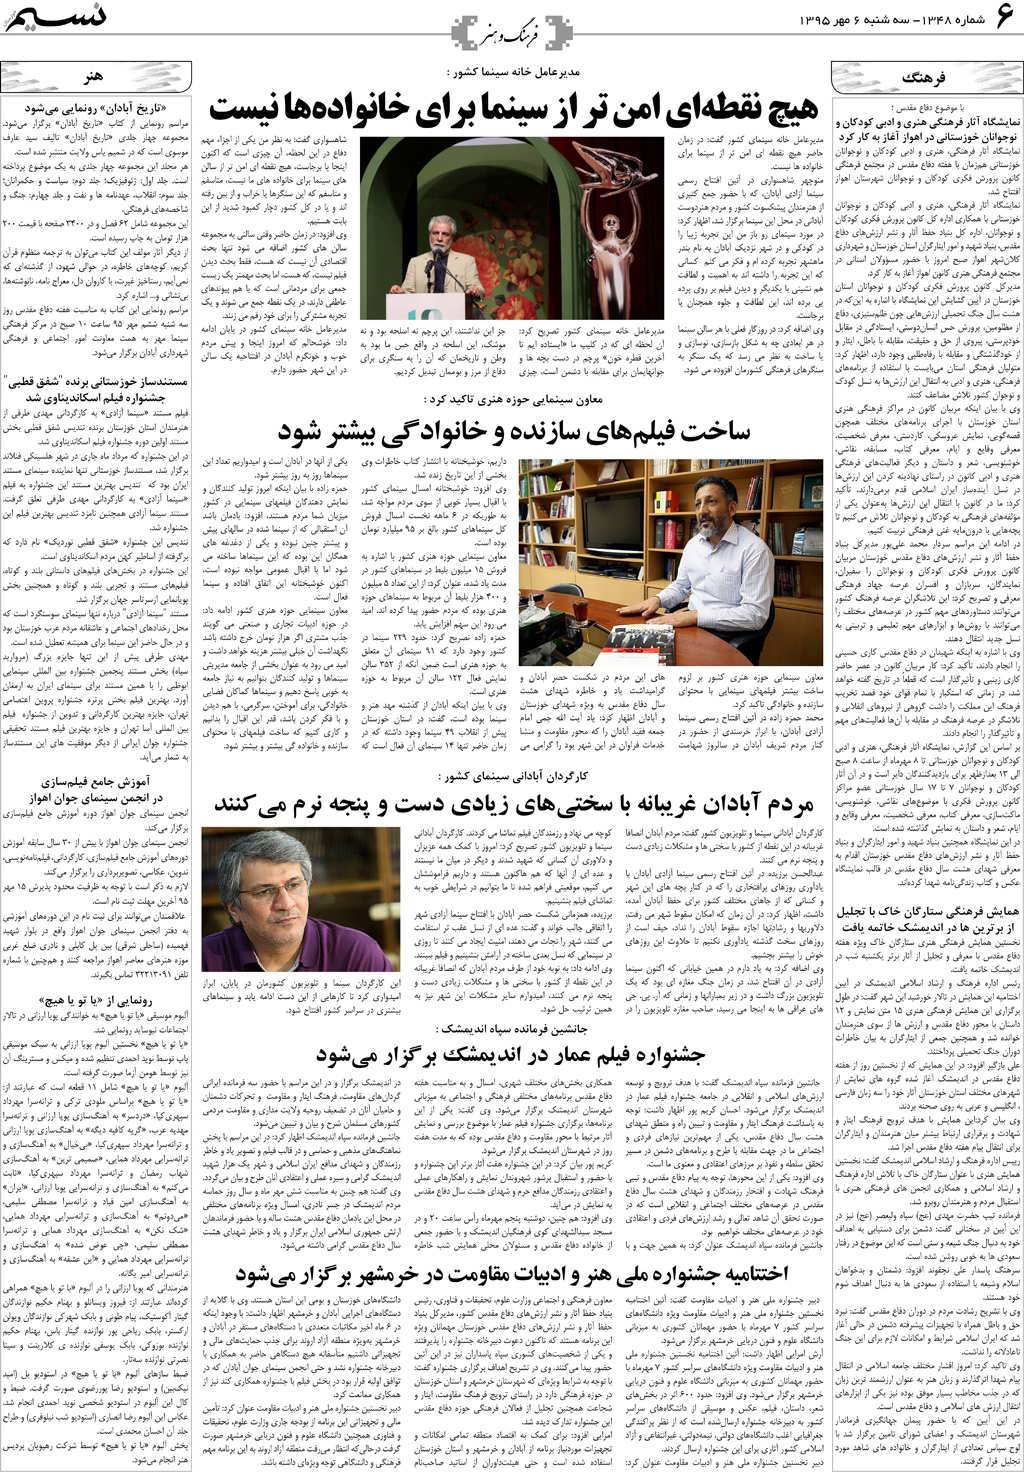 صفحه فرهنگ و هنر روزنامه نسیم شماره 1348